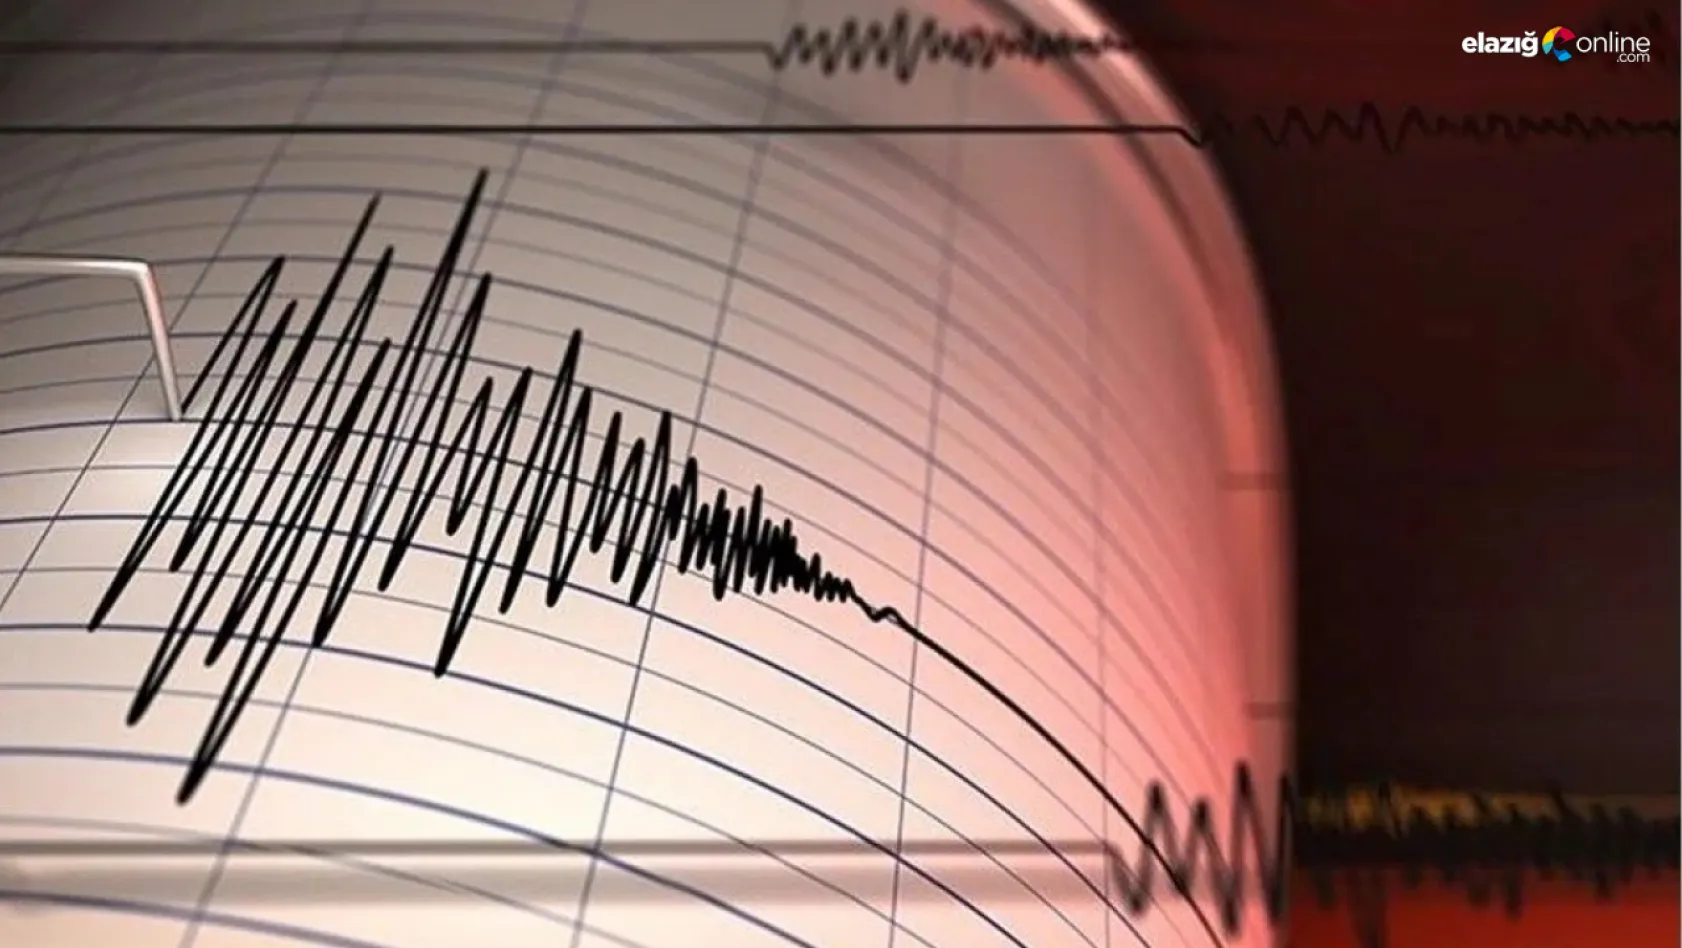 Malatya'da 4.7 büyüklüğünde deprem! Elazığ'da da hissedildi